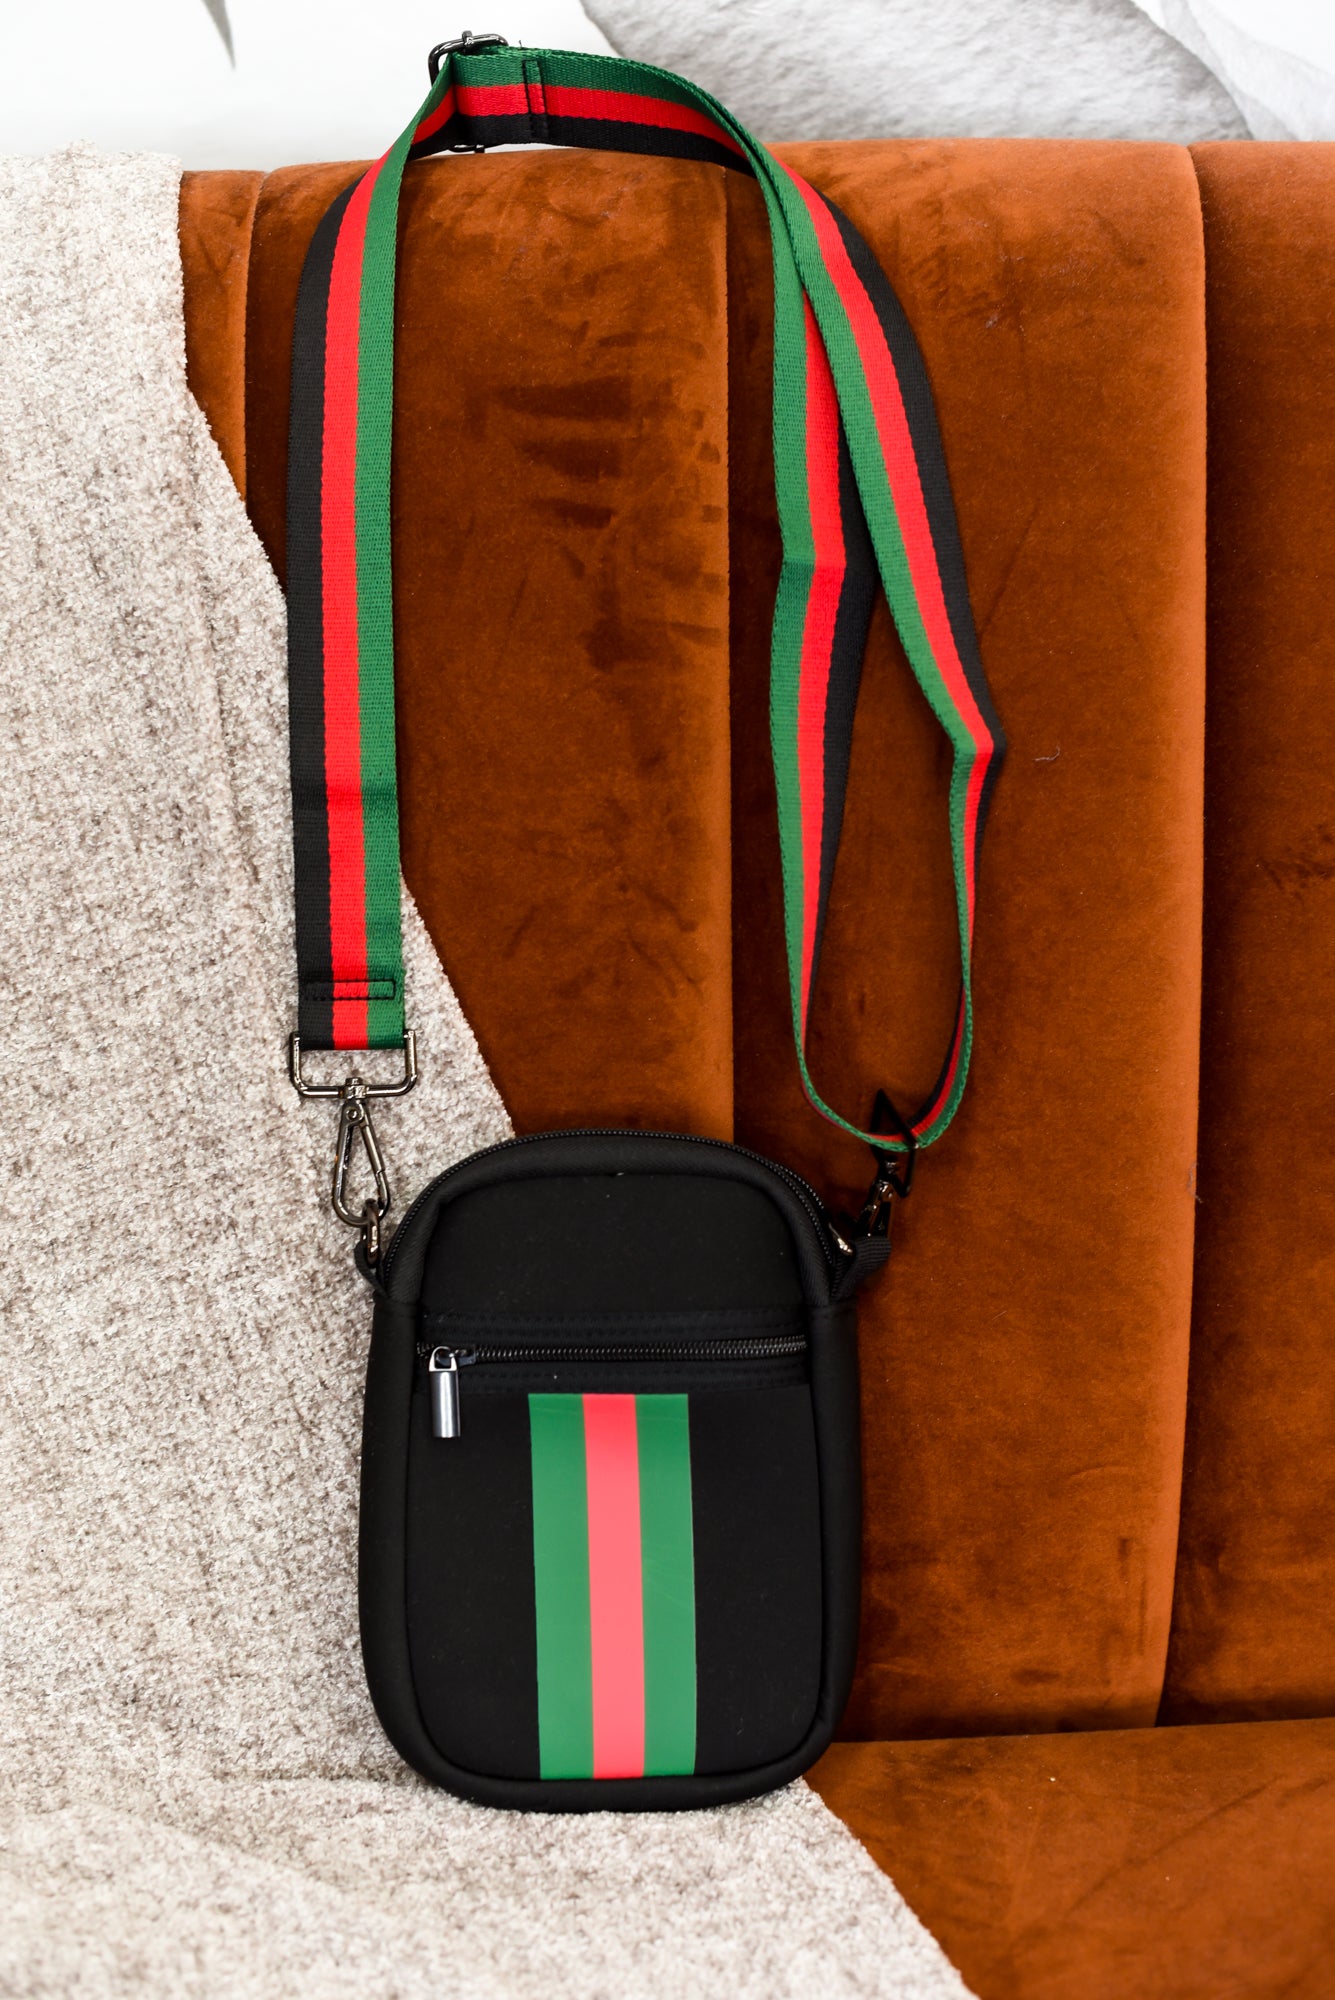 Green, Red & Black Handbag Strap - Adjustable Shoulder to